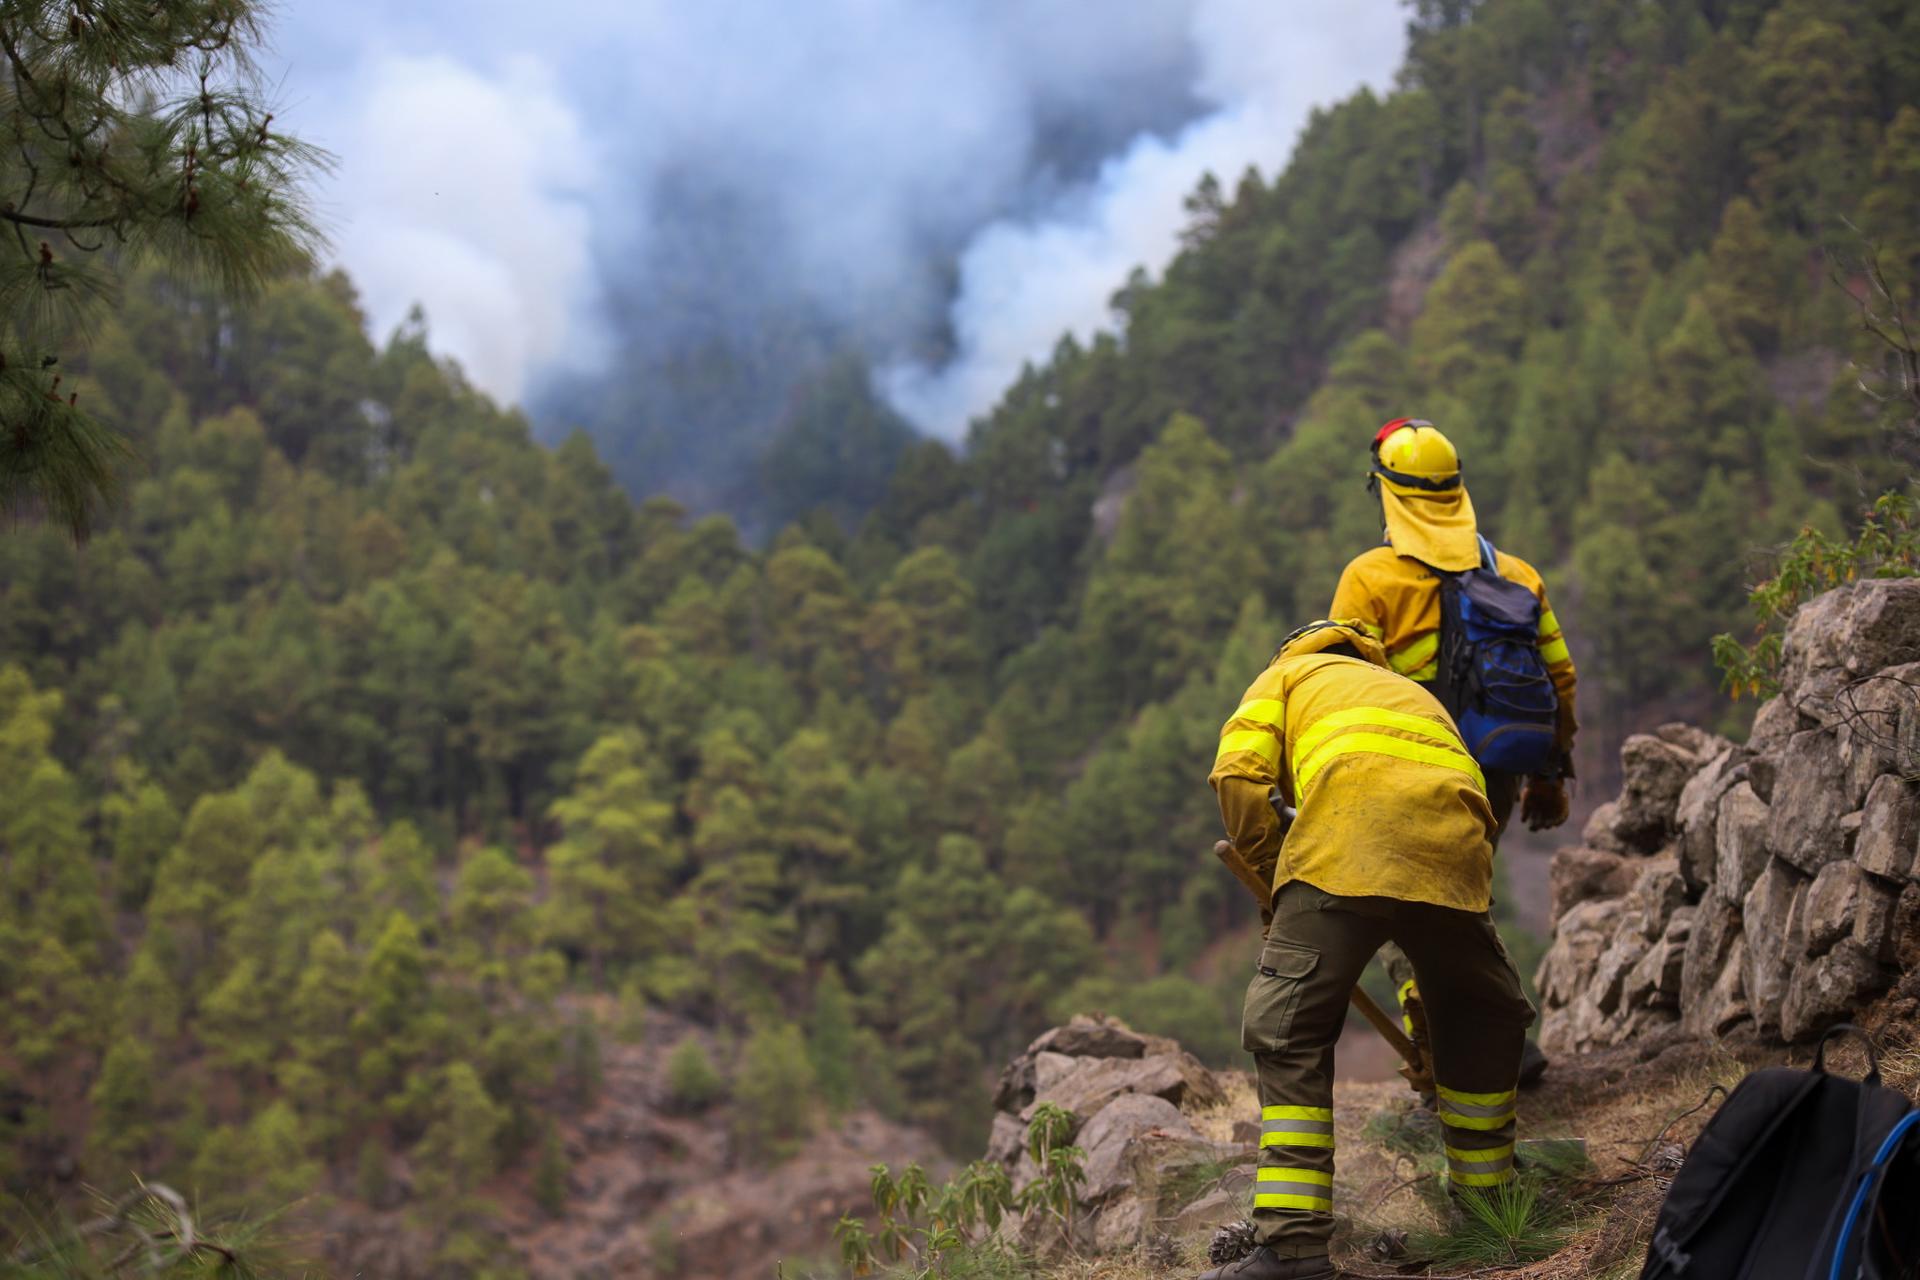 Miembros de una cuadrilla de los Equipos de Intervención y Refuerzo en Incendios Forestales (EIRIF) trabajan en las labores de extinción el barranco de Jurado, en Tijarafe. EFE/ Luis G Morera